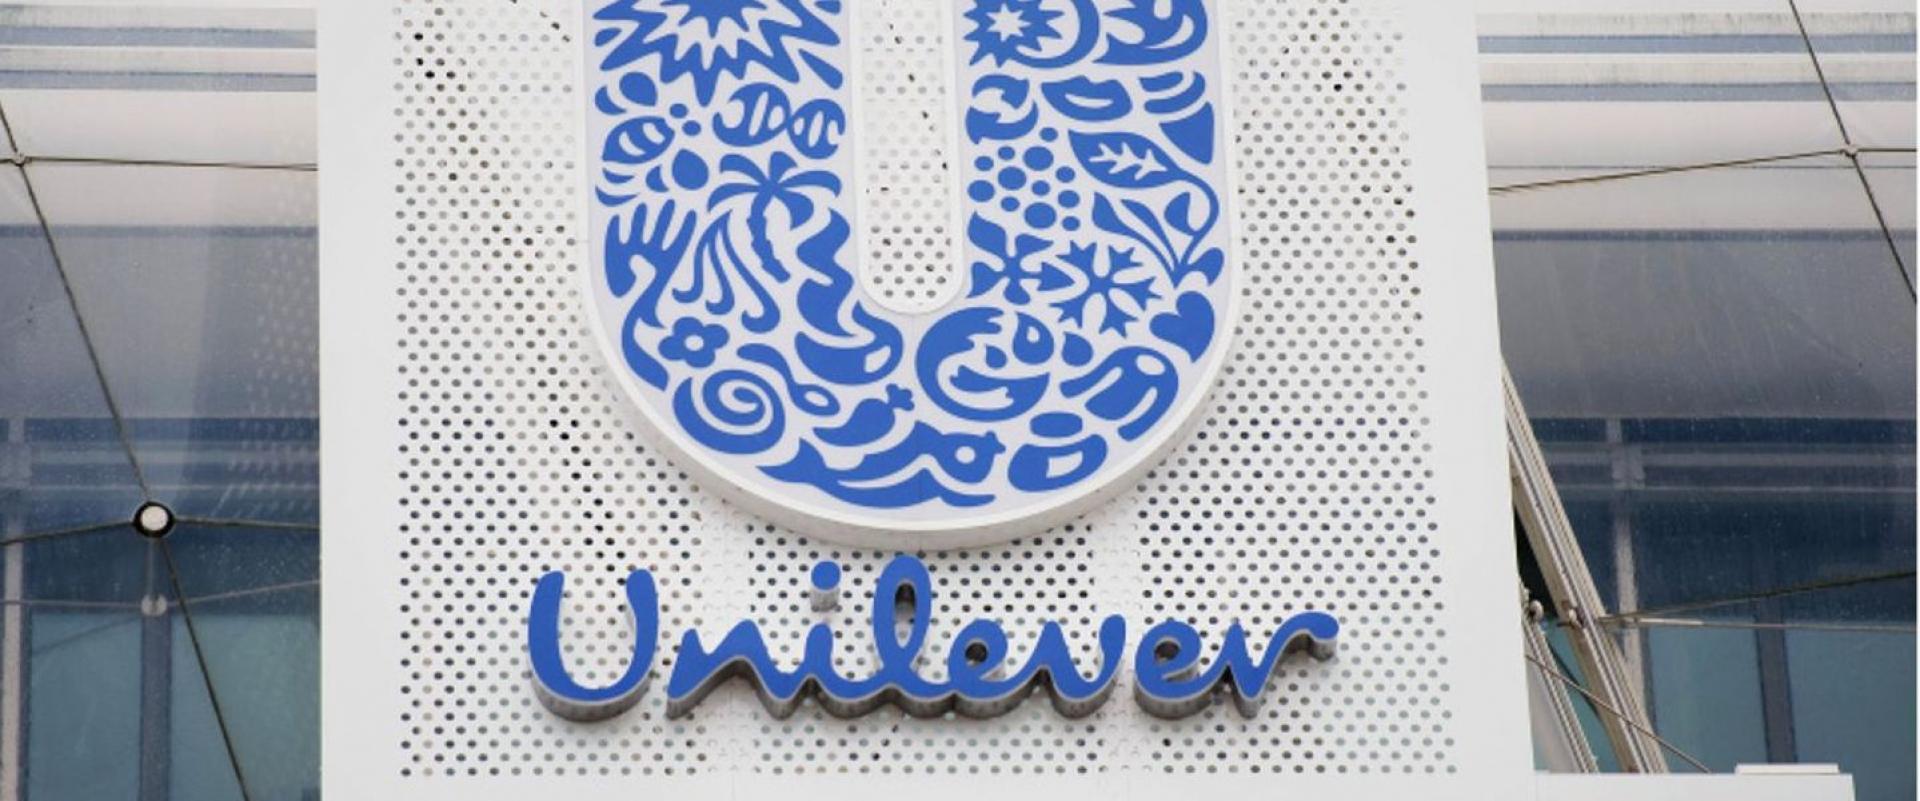 Unilever nie zamierza podbijać stawki w negocjacjach z GSK, ale chce rozwijać sektor kosmetyków premium